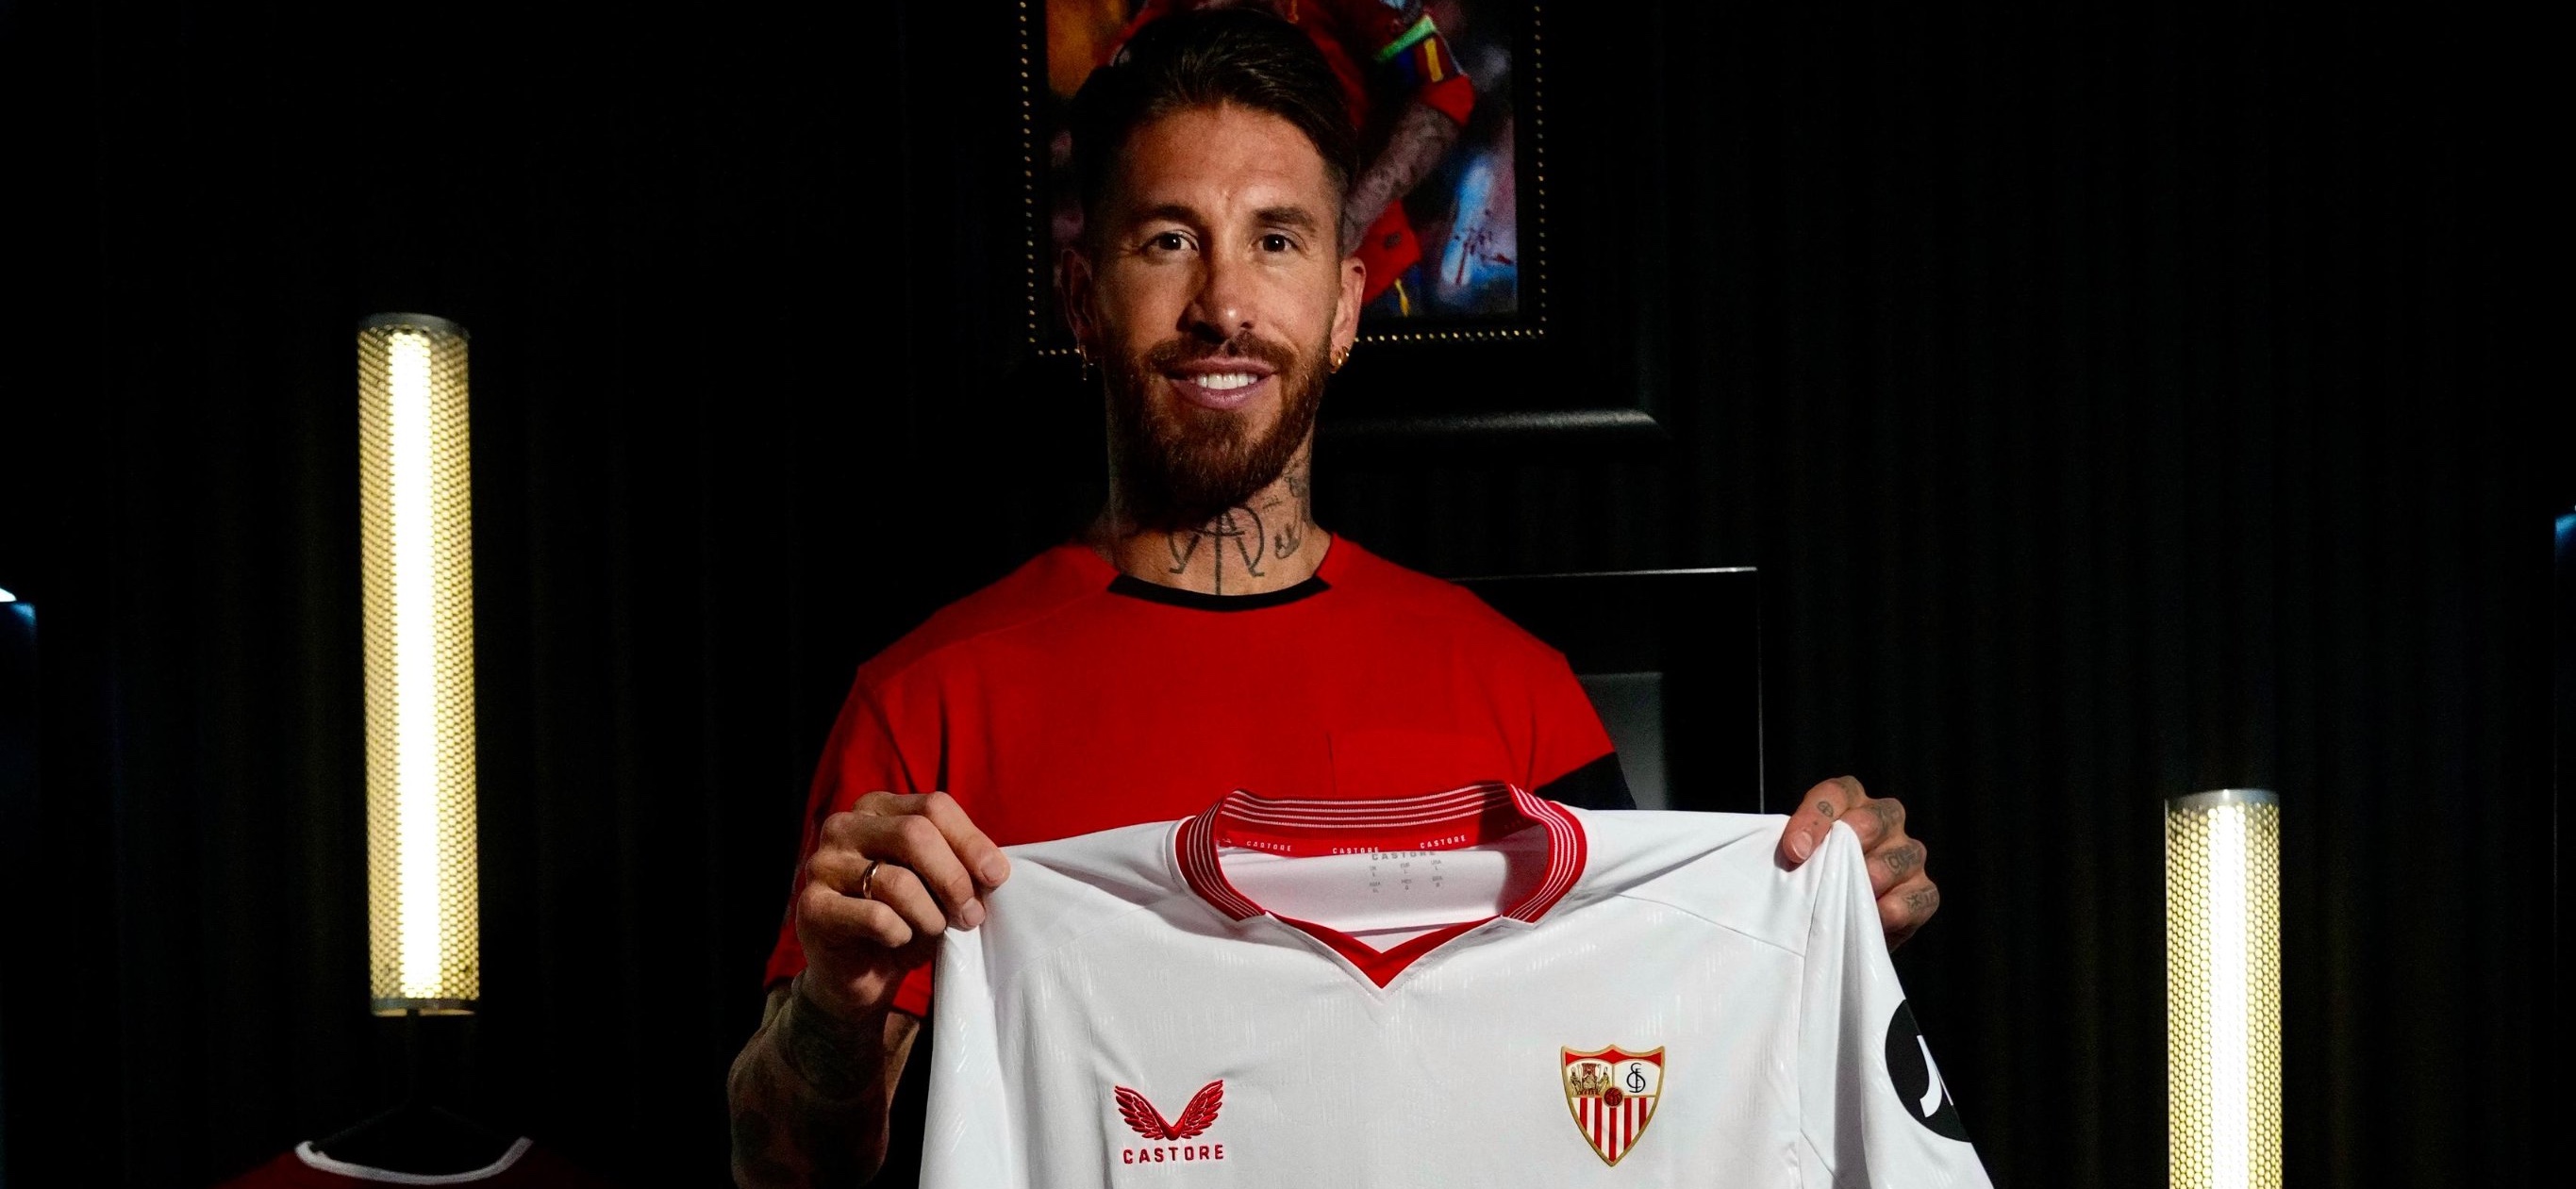 Kembali ke Sevilla, Sergio Ramos Minta Maaf Kepada Fans